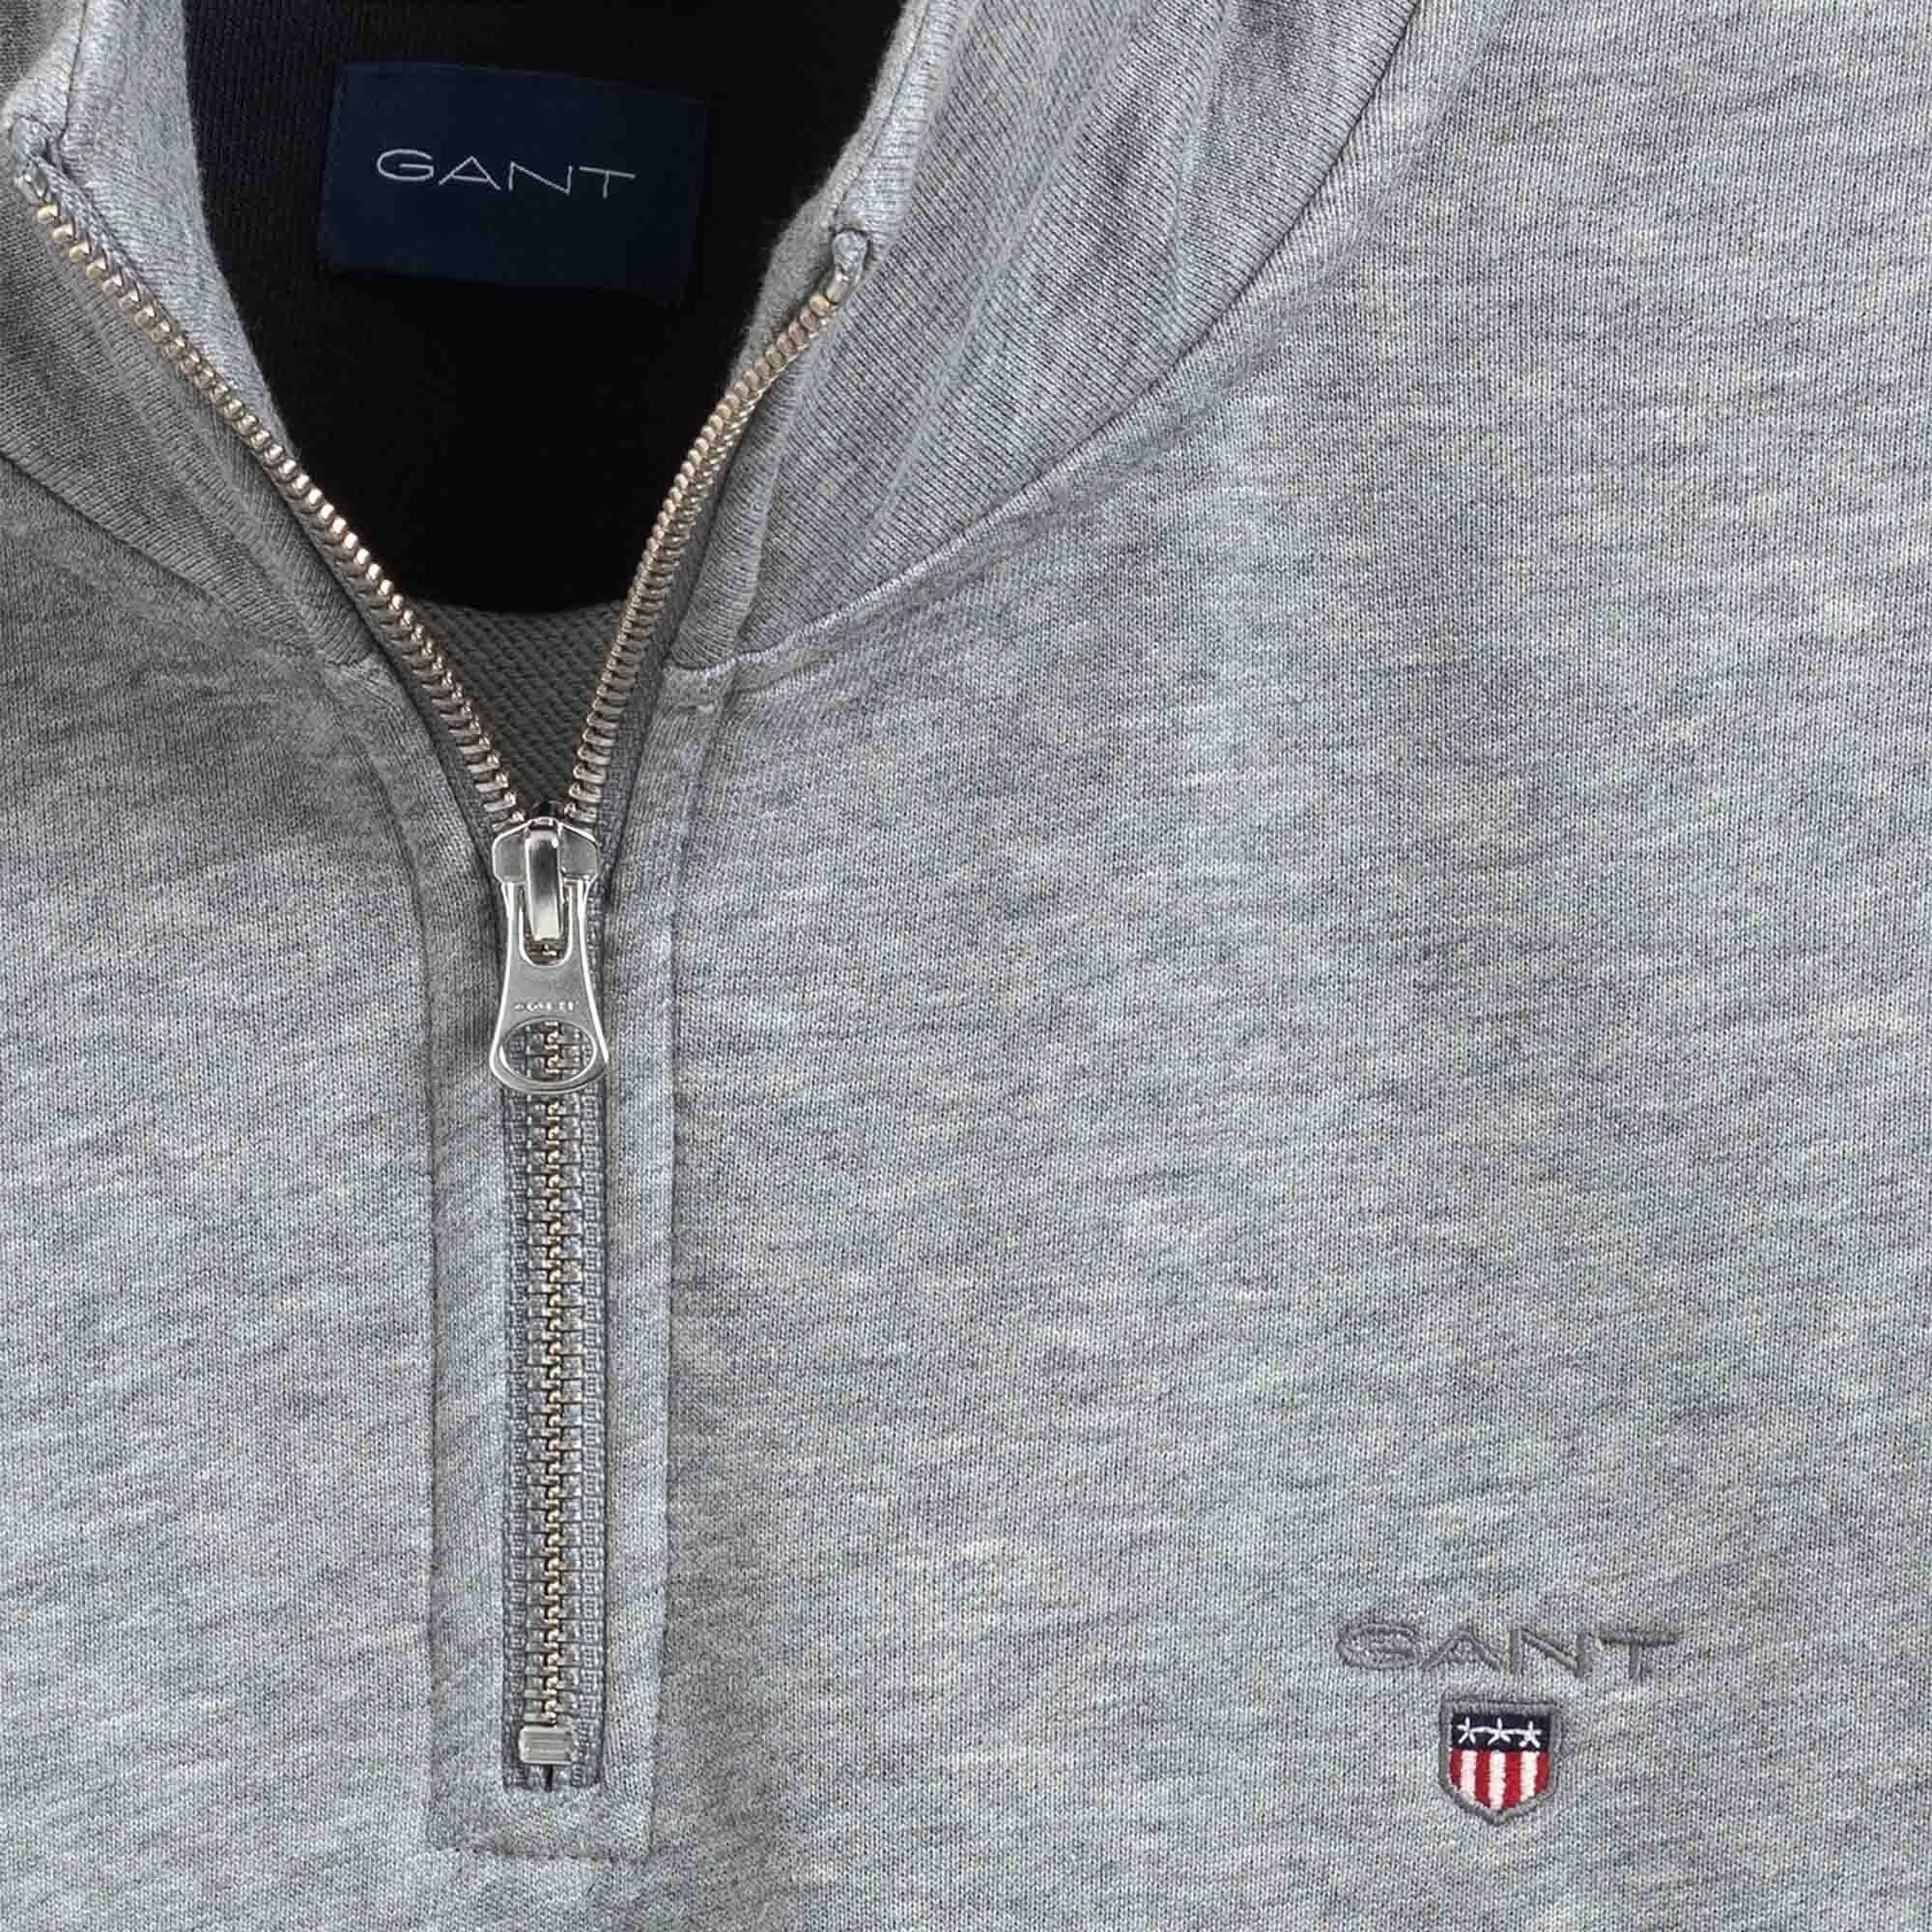 Sweatshirt Half Gant Grau Sweatshirt - Sweat Original Herren Zip